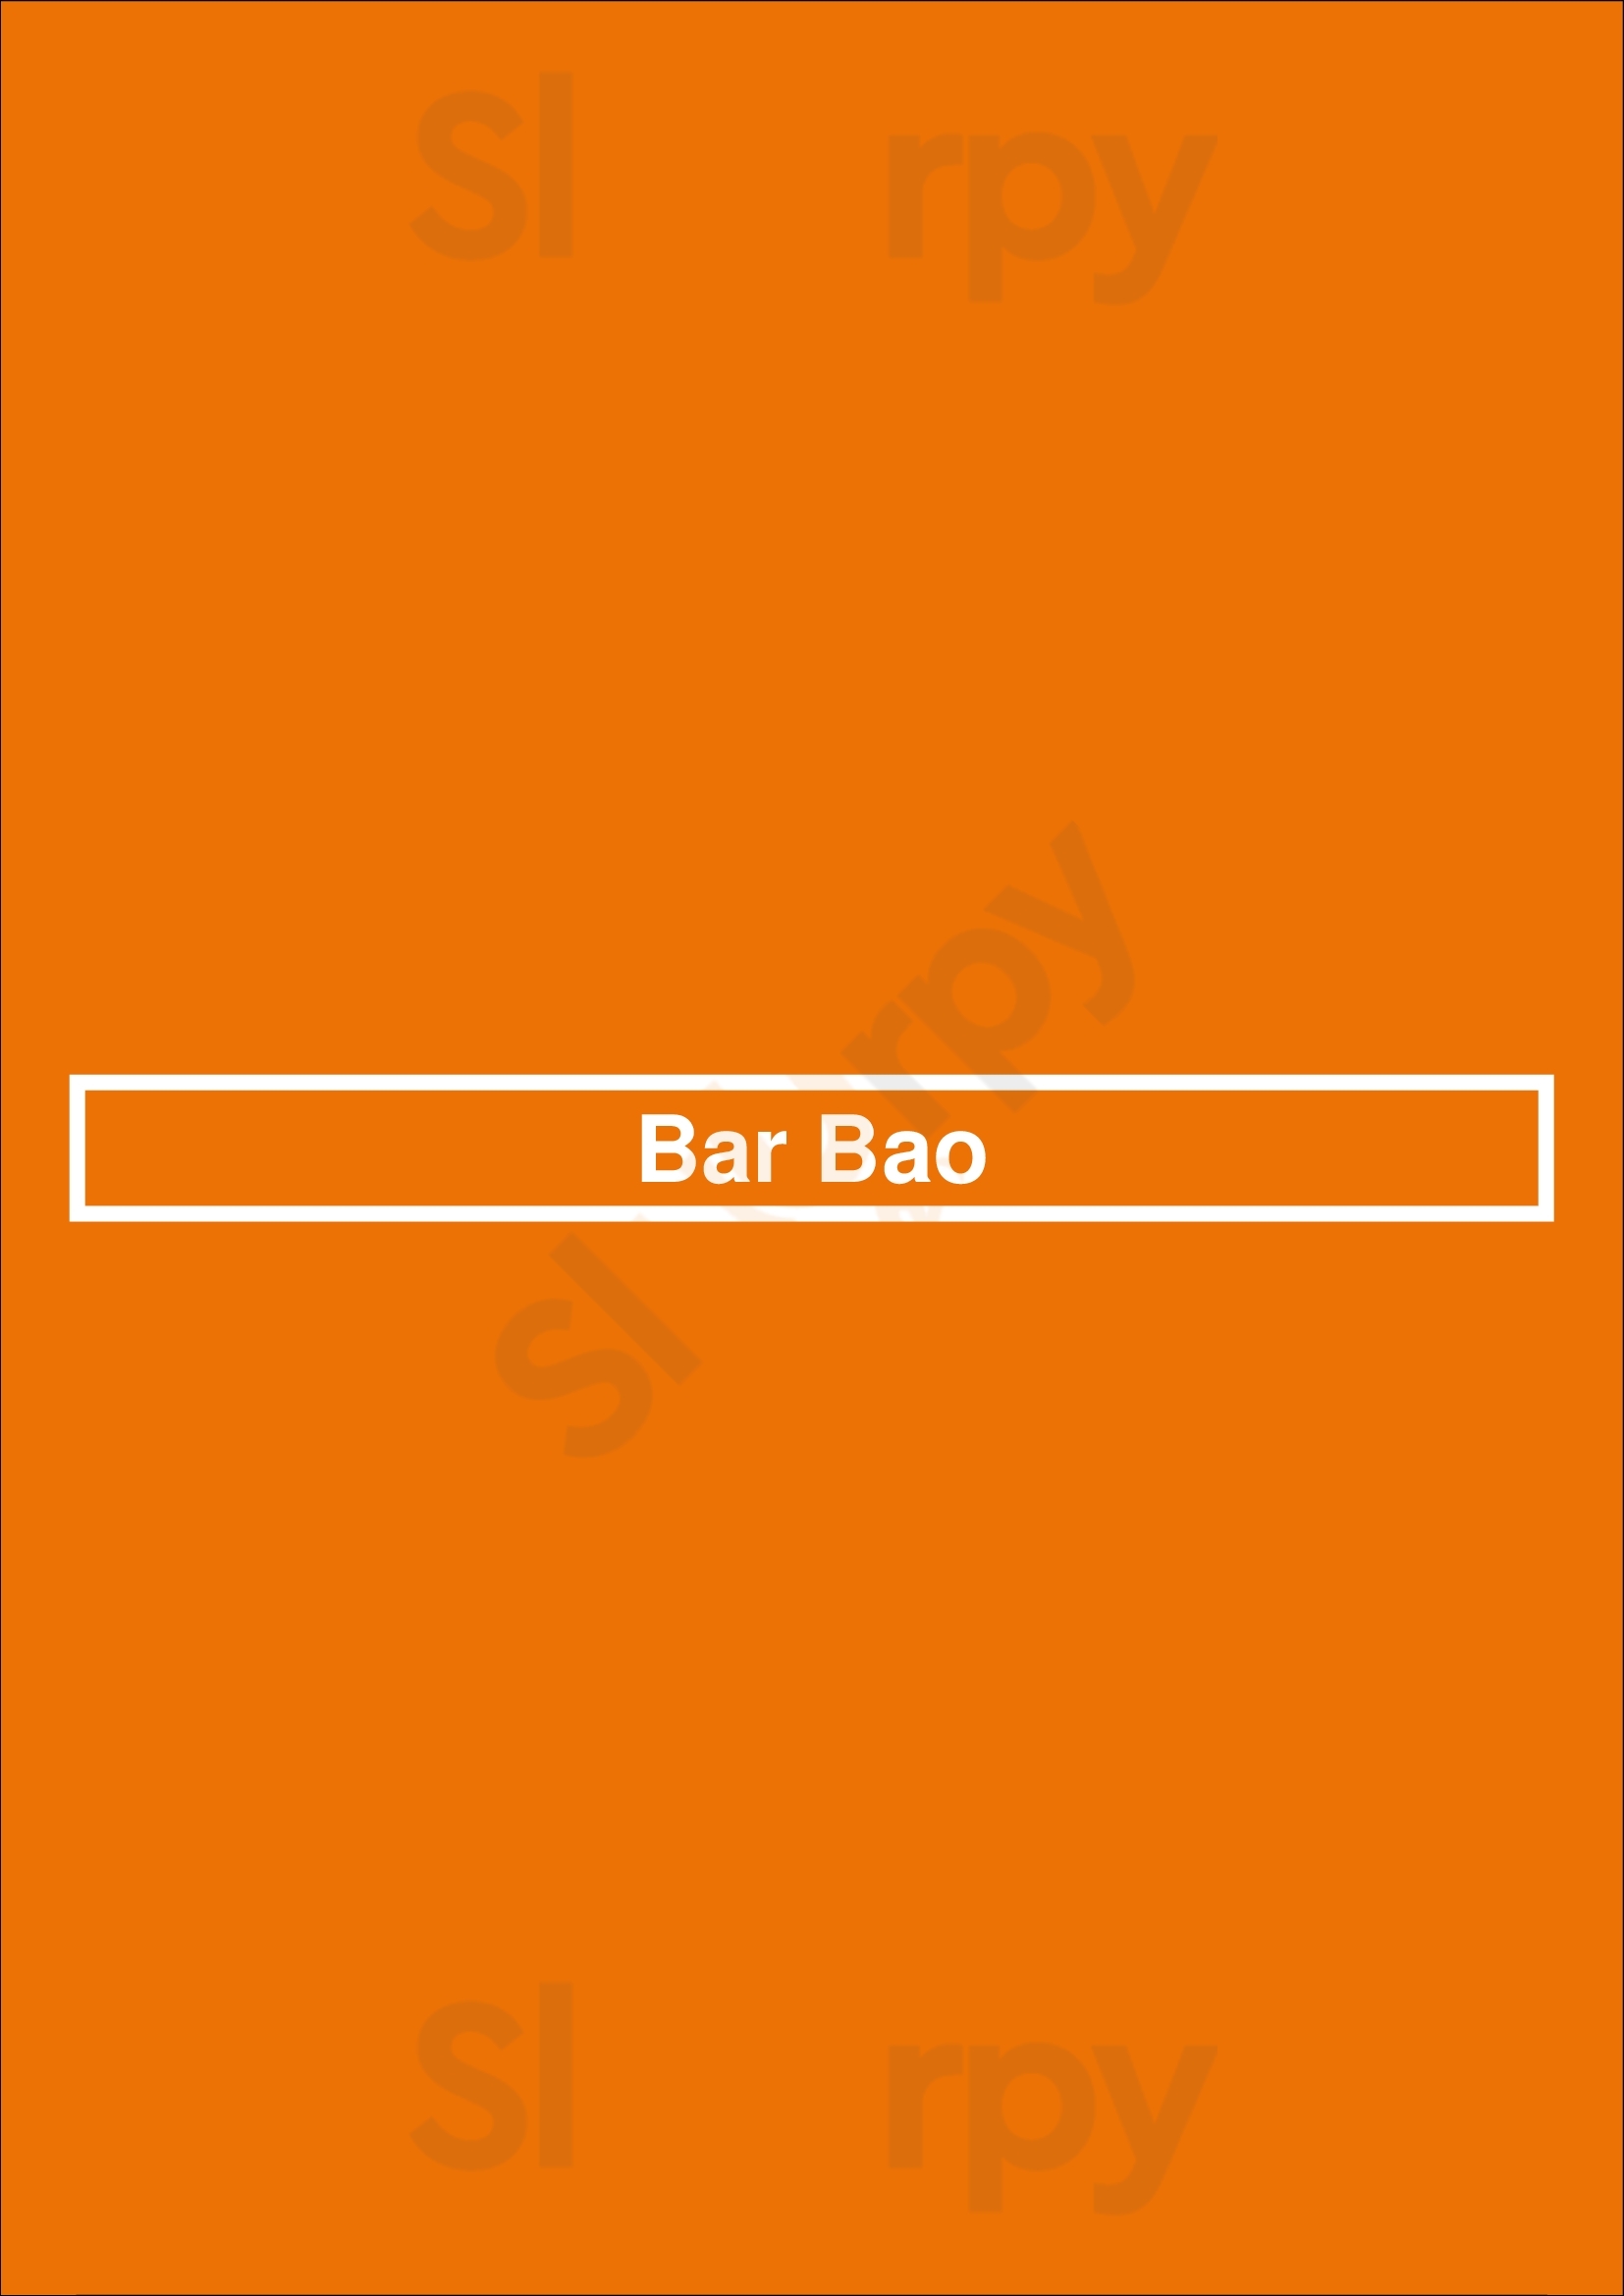 Bar Bao Arlington Menu - 1